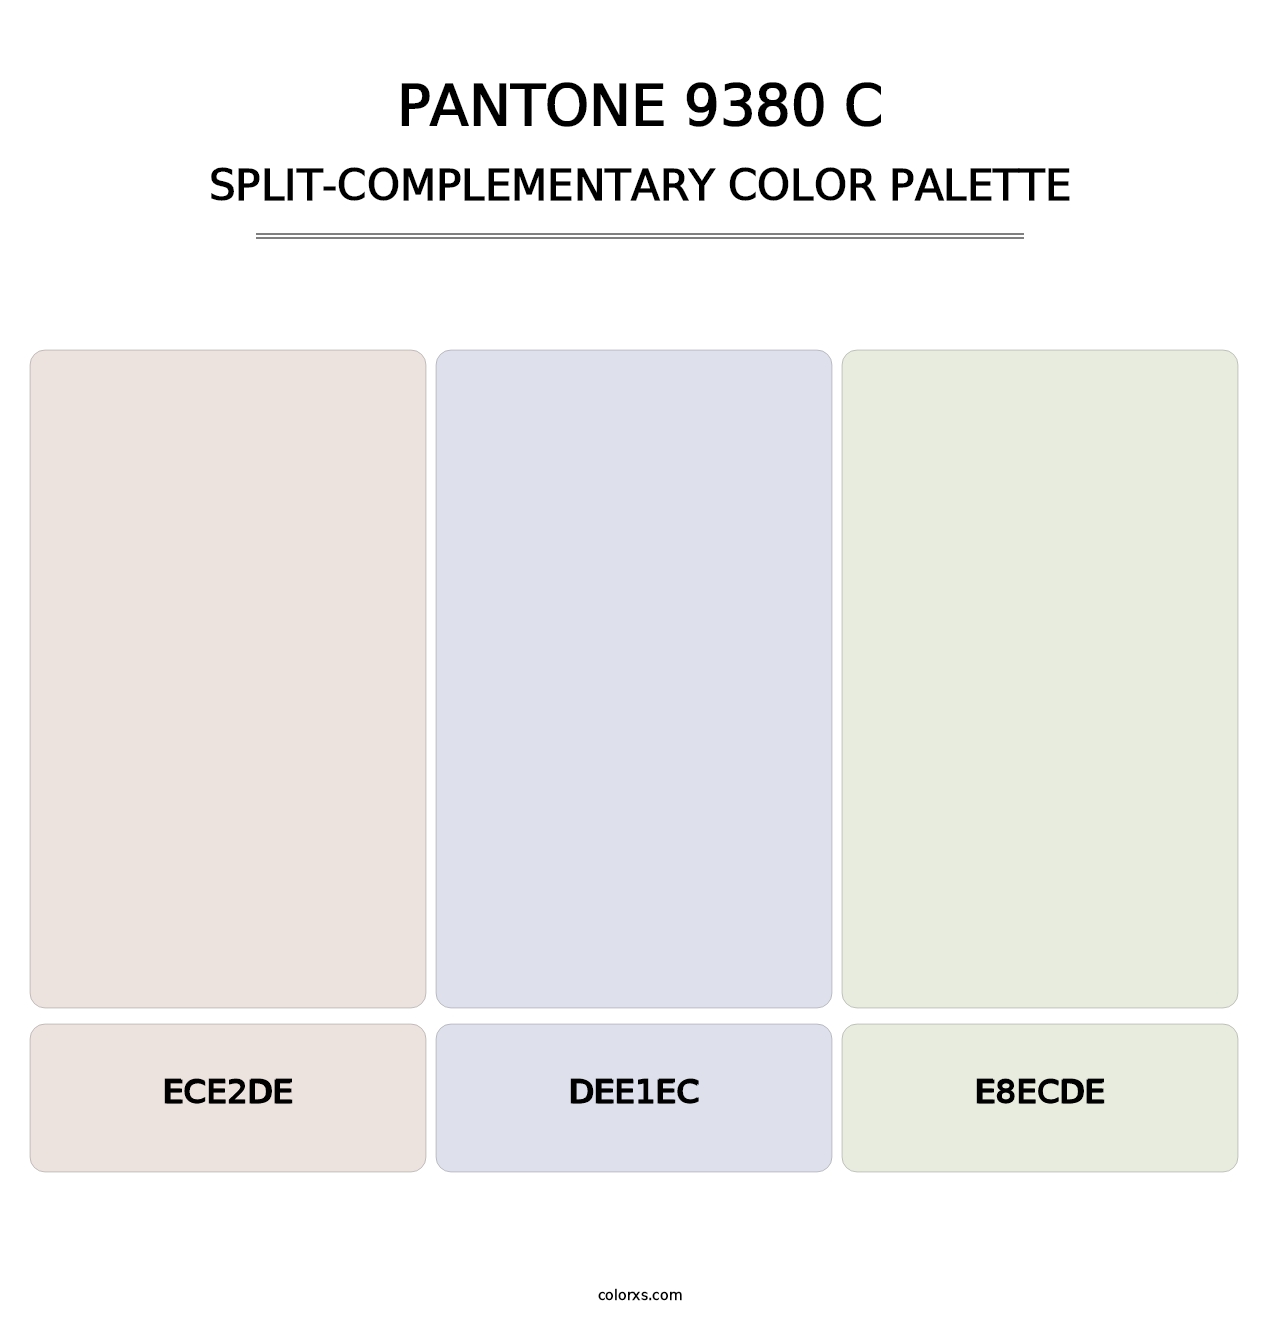 PANTONE 9380 C - Split-Complementary Color Palette